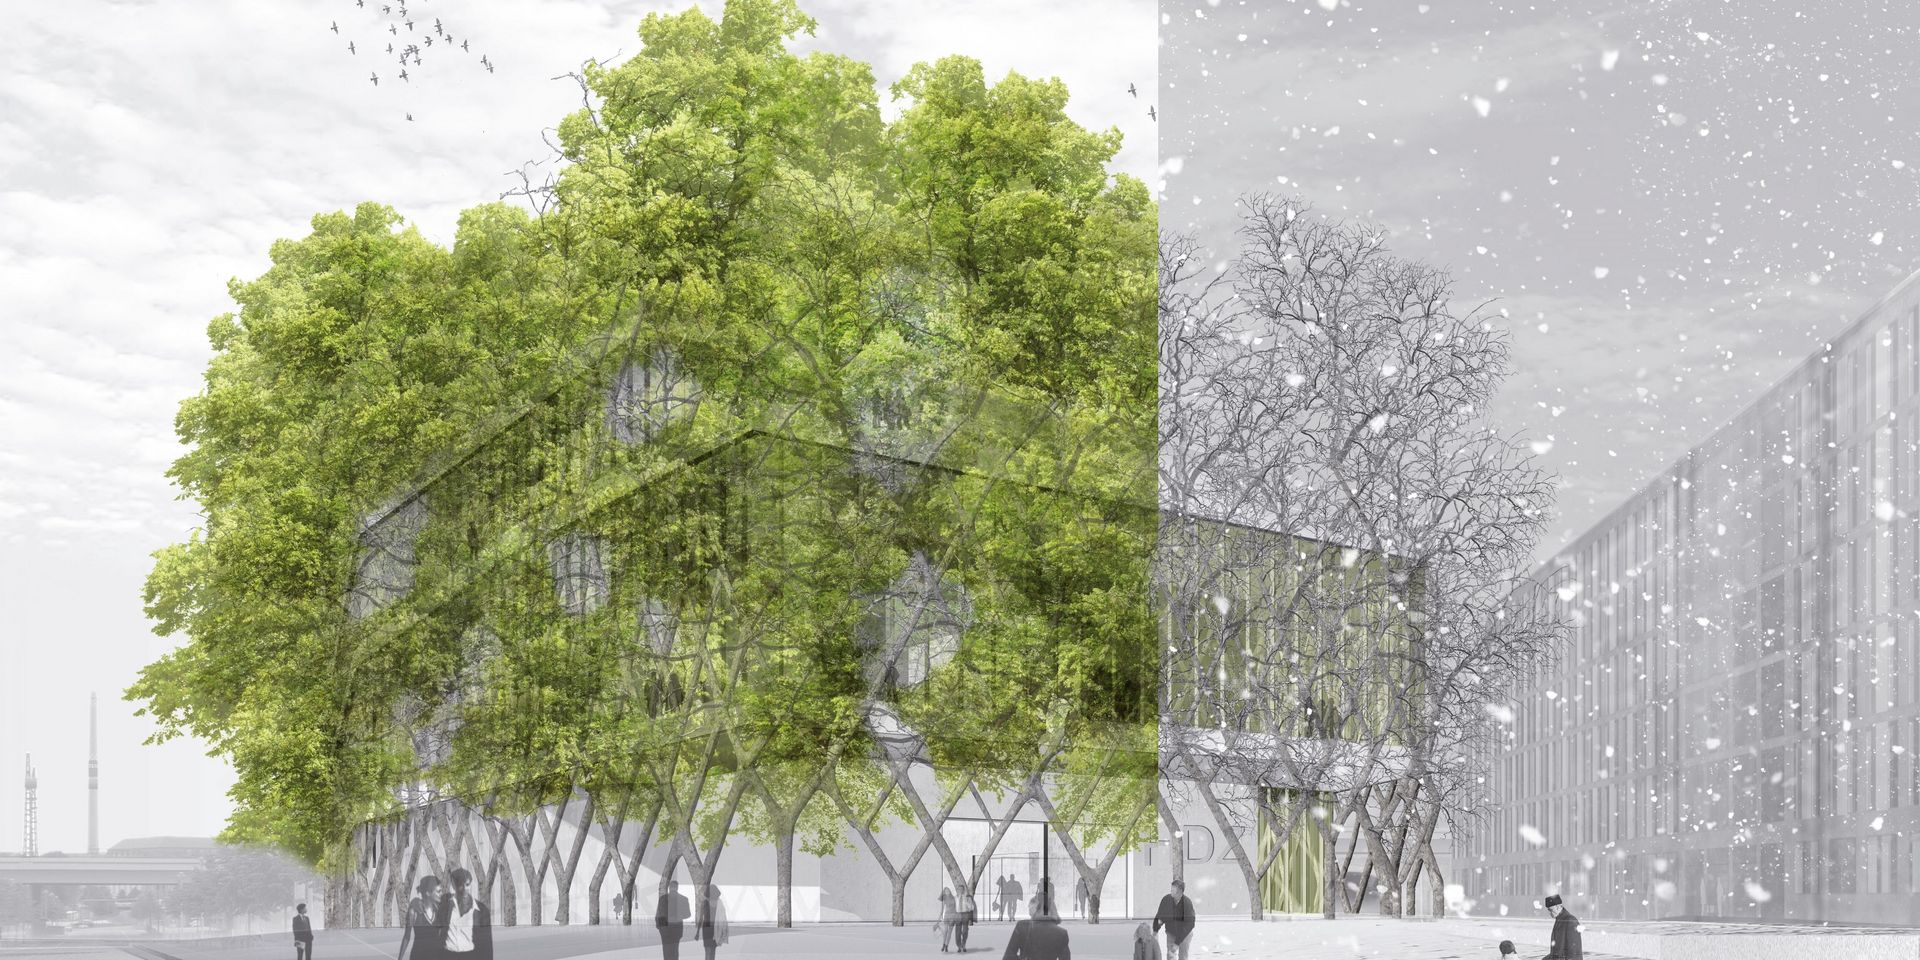 Digitales Modell: Das Modell zeigt ein bewachsenes Gebäudes, dessen beide Hälften jeweils eine Jahreszeit, Sommer und Winter, darstellen. Auf dem Vorplatz des Gebäudes sind kleine Grüppchen oder einzelne Personen zu sehen.